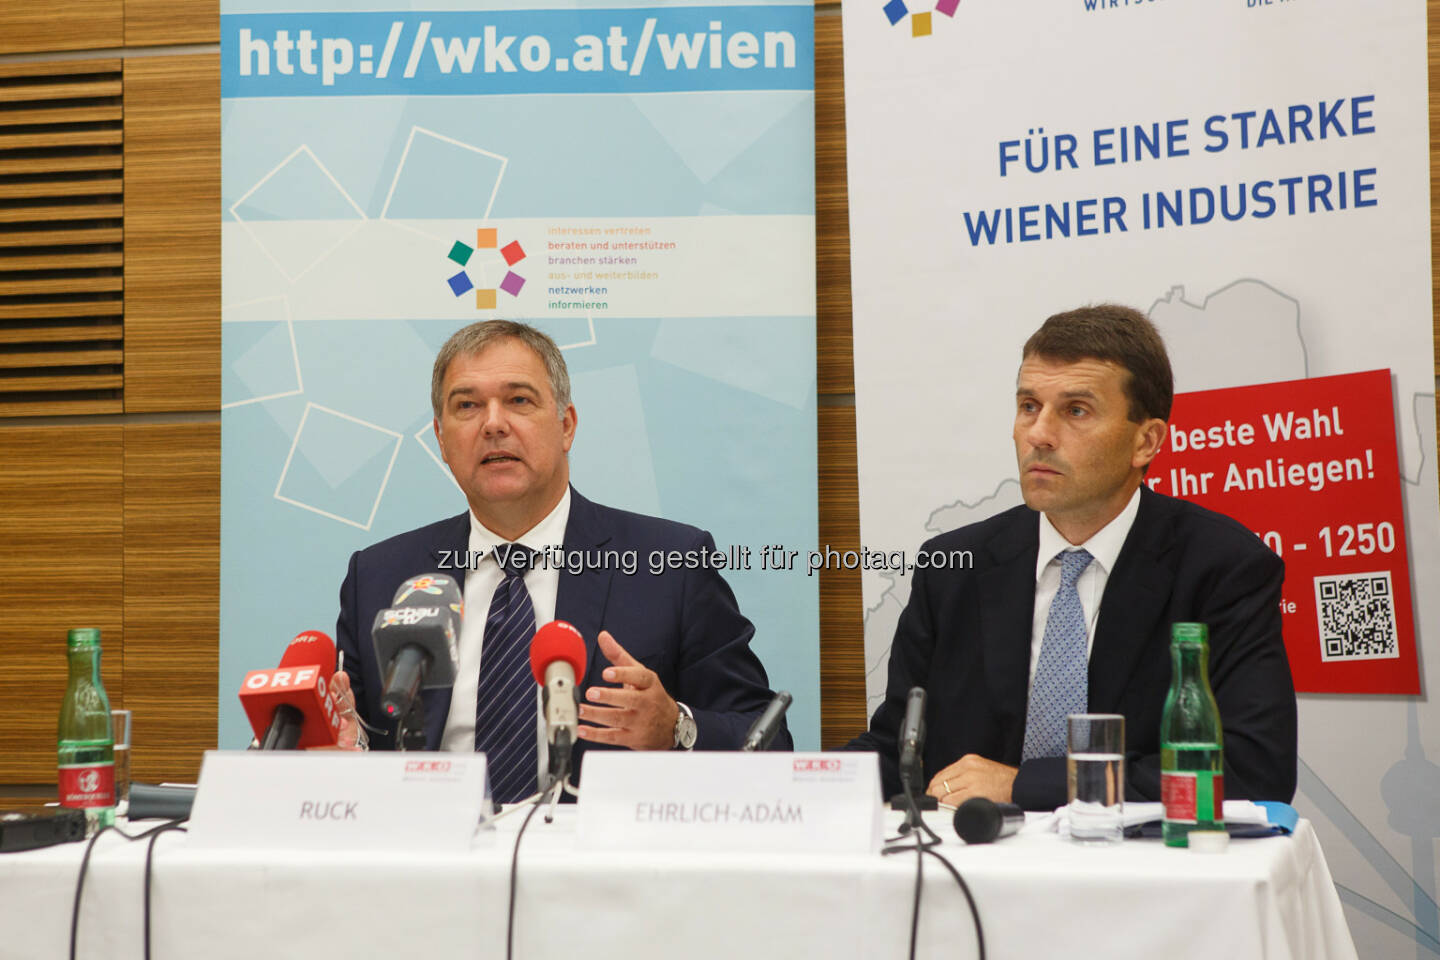 Walter Ruck, Präsident der WK Wien und Stefan Ehrlich-Adám, Spratenobmann Industrie Wien: Wiener Industrie kämpft mit Bürokratie, Steuern und Umwidmungen